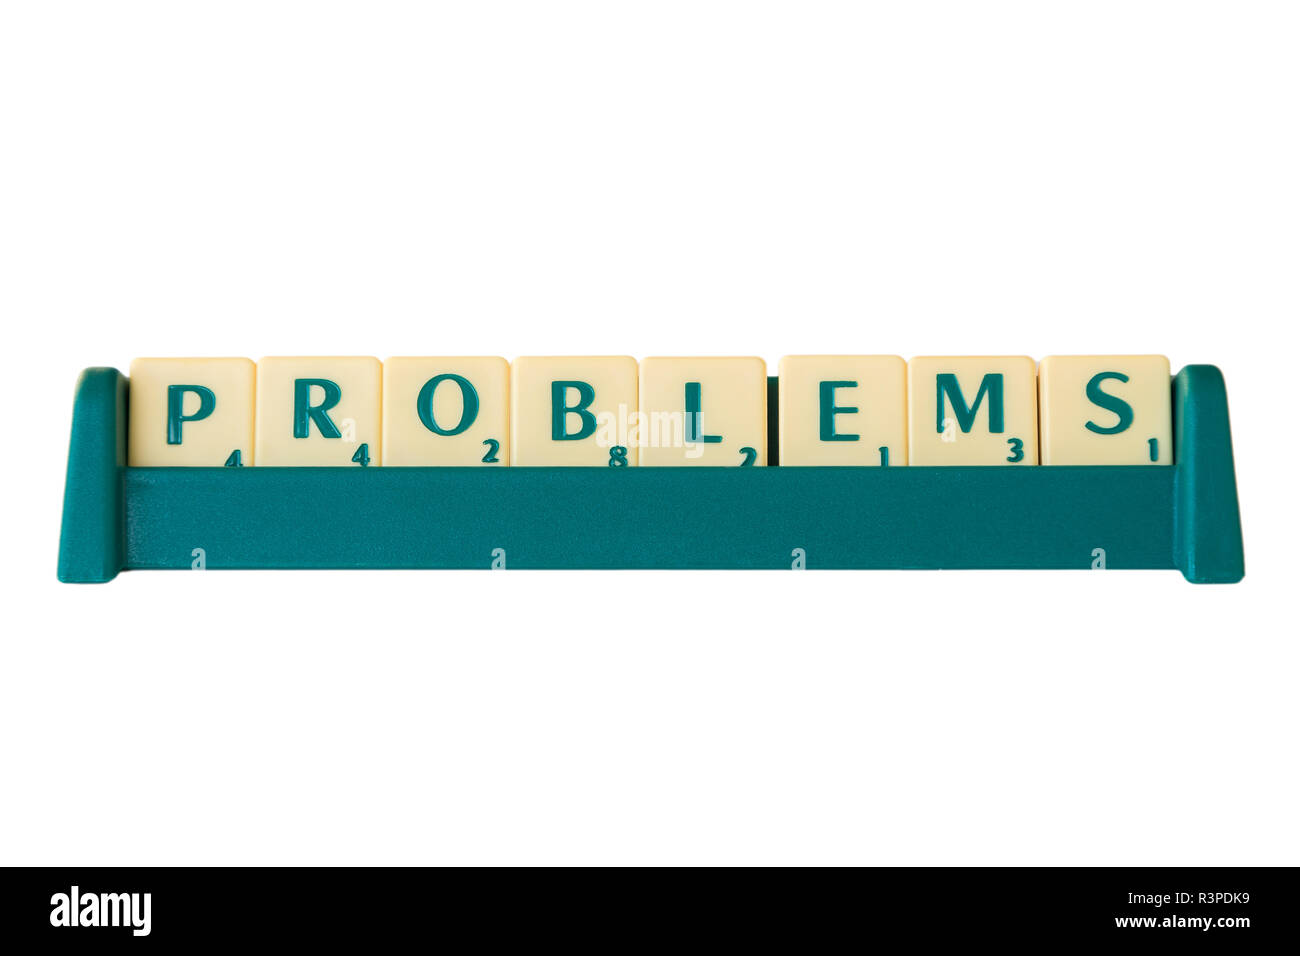 Jeu de Scrabble lettres avec valeur score sur un support formant le mot "problèmes". Isolé sur fond blanc. Banque D'Images